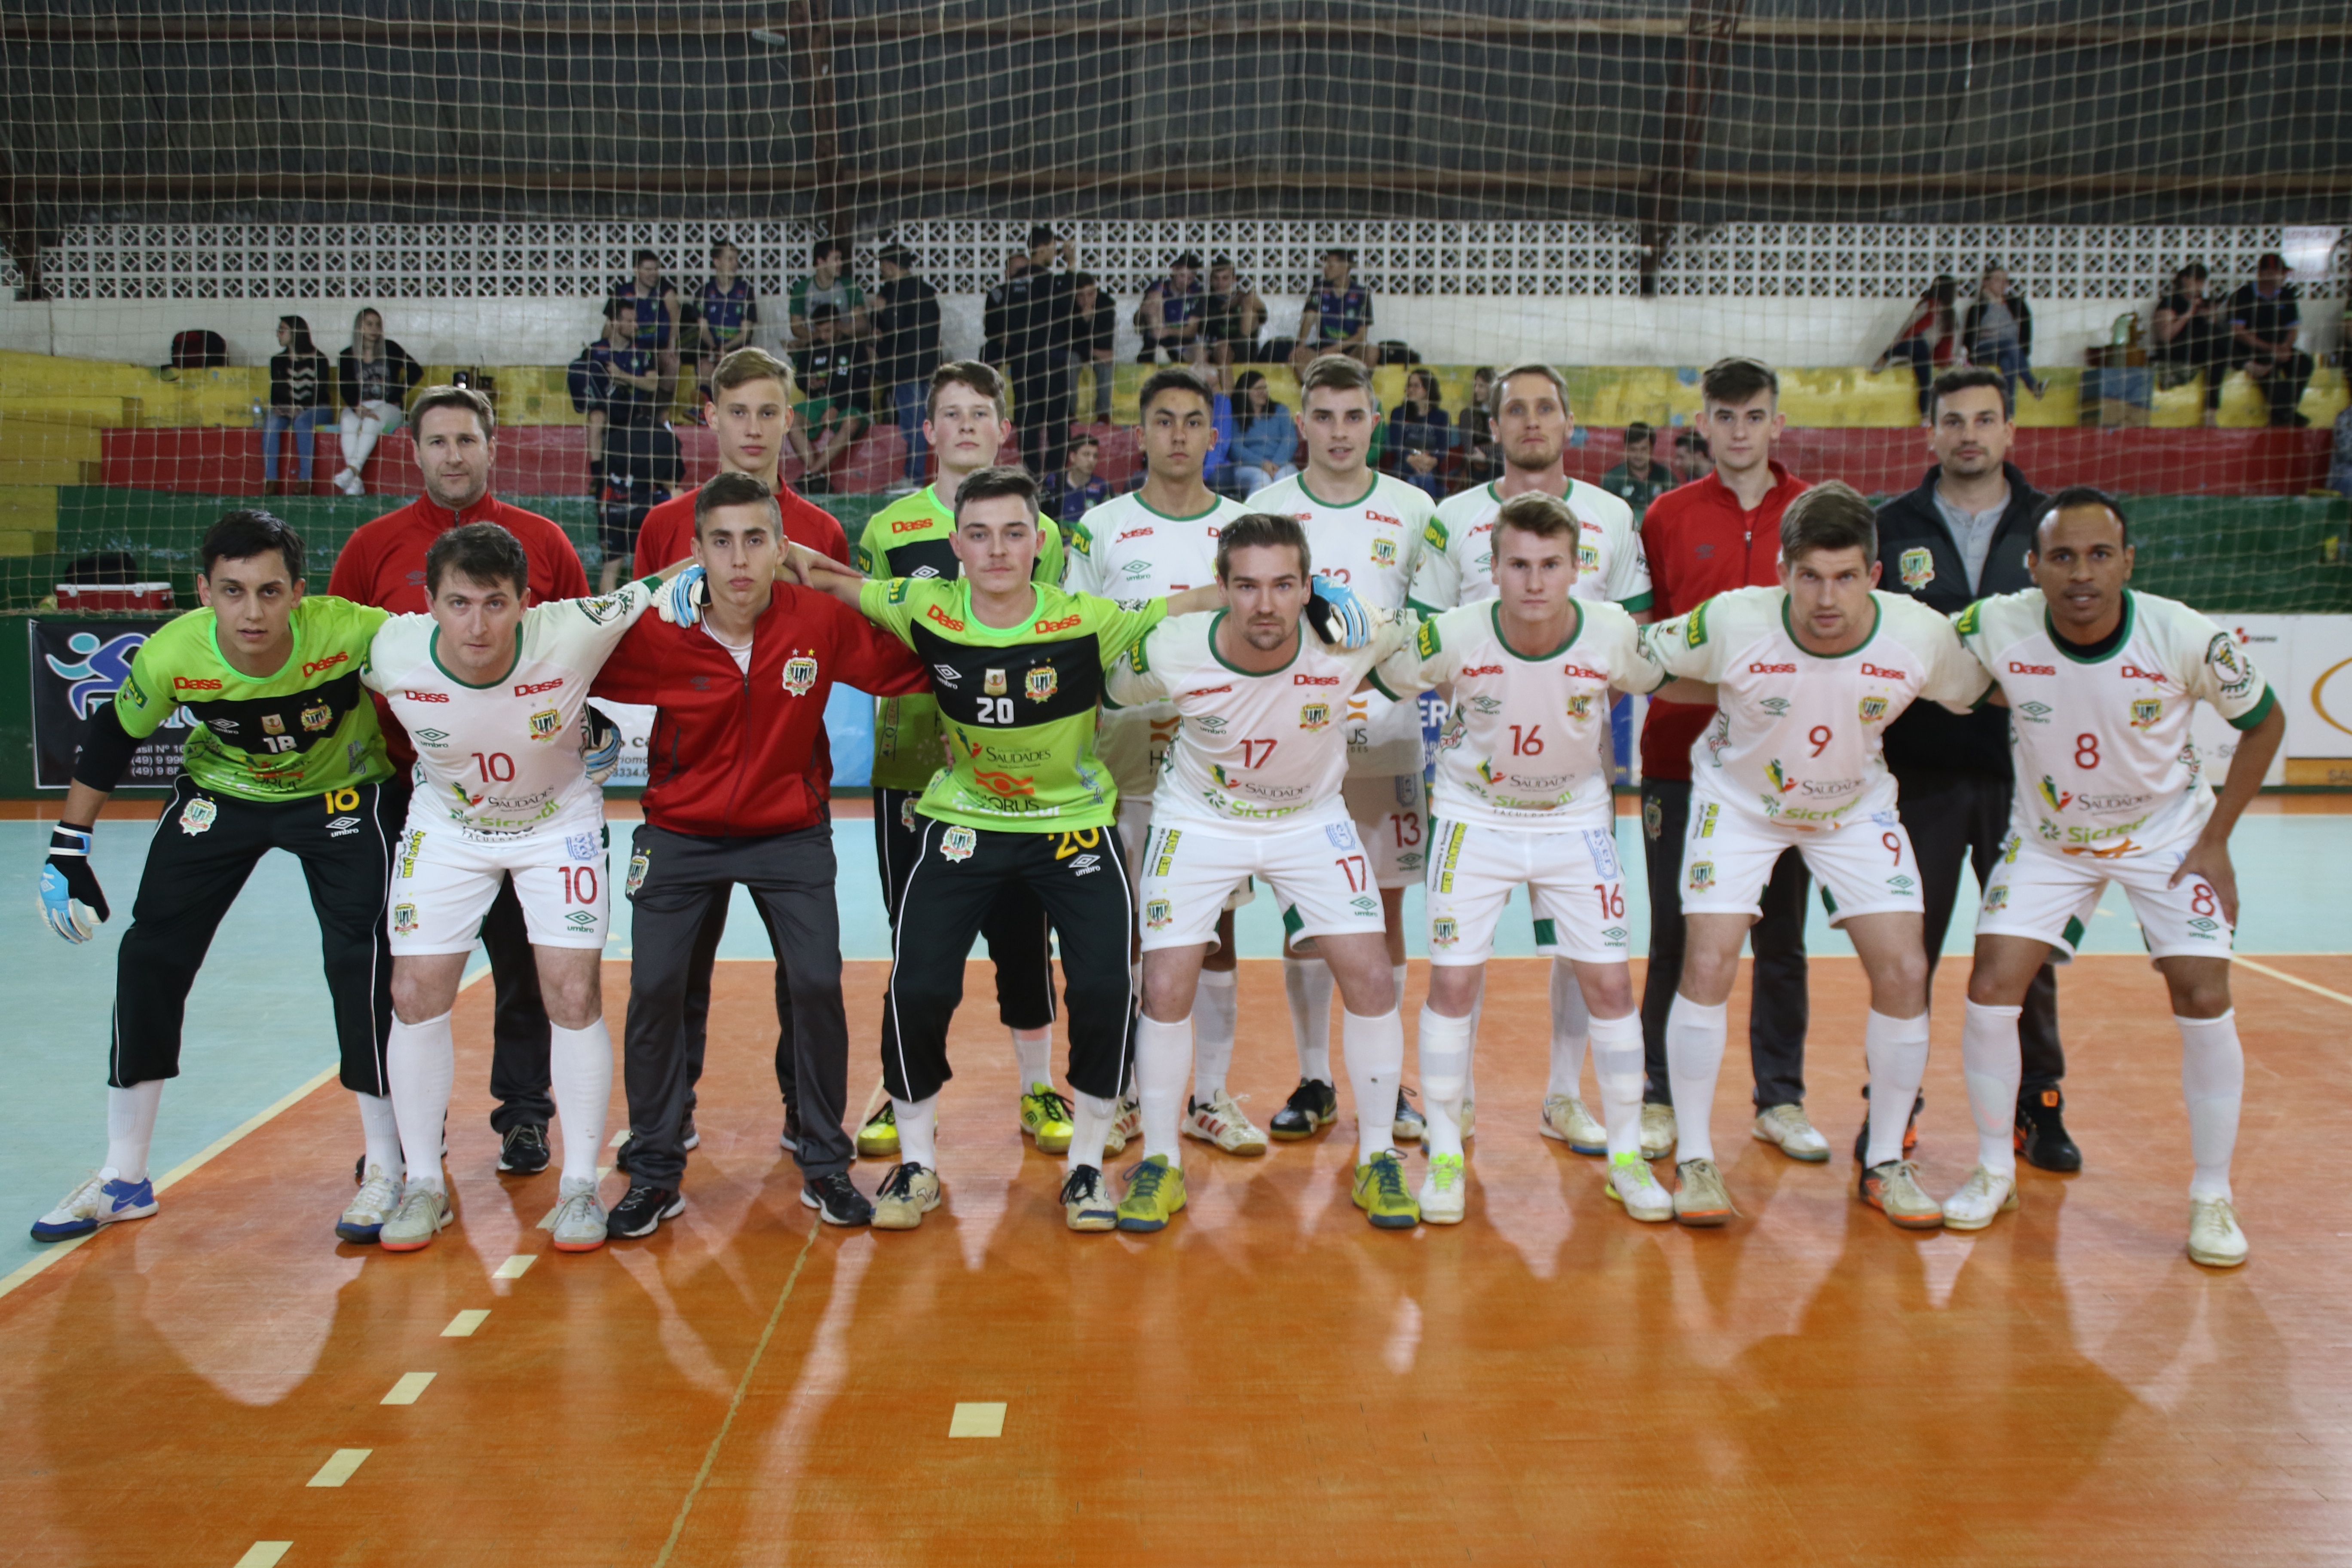 Equipe de Futsal Masculino do município de Saudades ficou em primeiro lugar invicto nos JASC, etapa regional